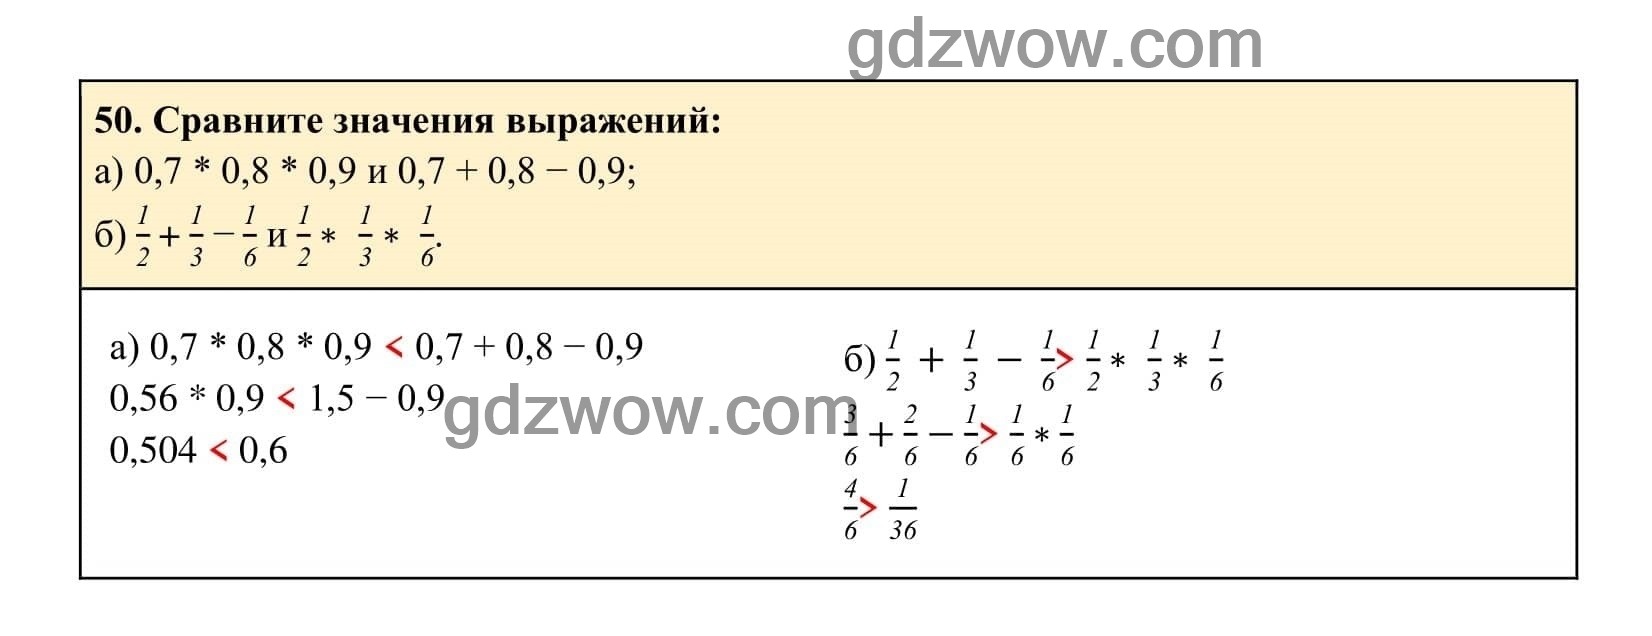 Упражнение 50 - ГДЗ по Алгебре 7 класс Учебник Макарычев (решебник) - GDZwow